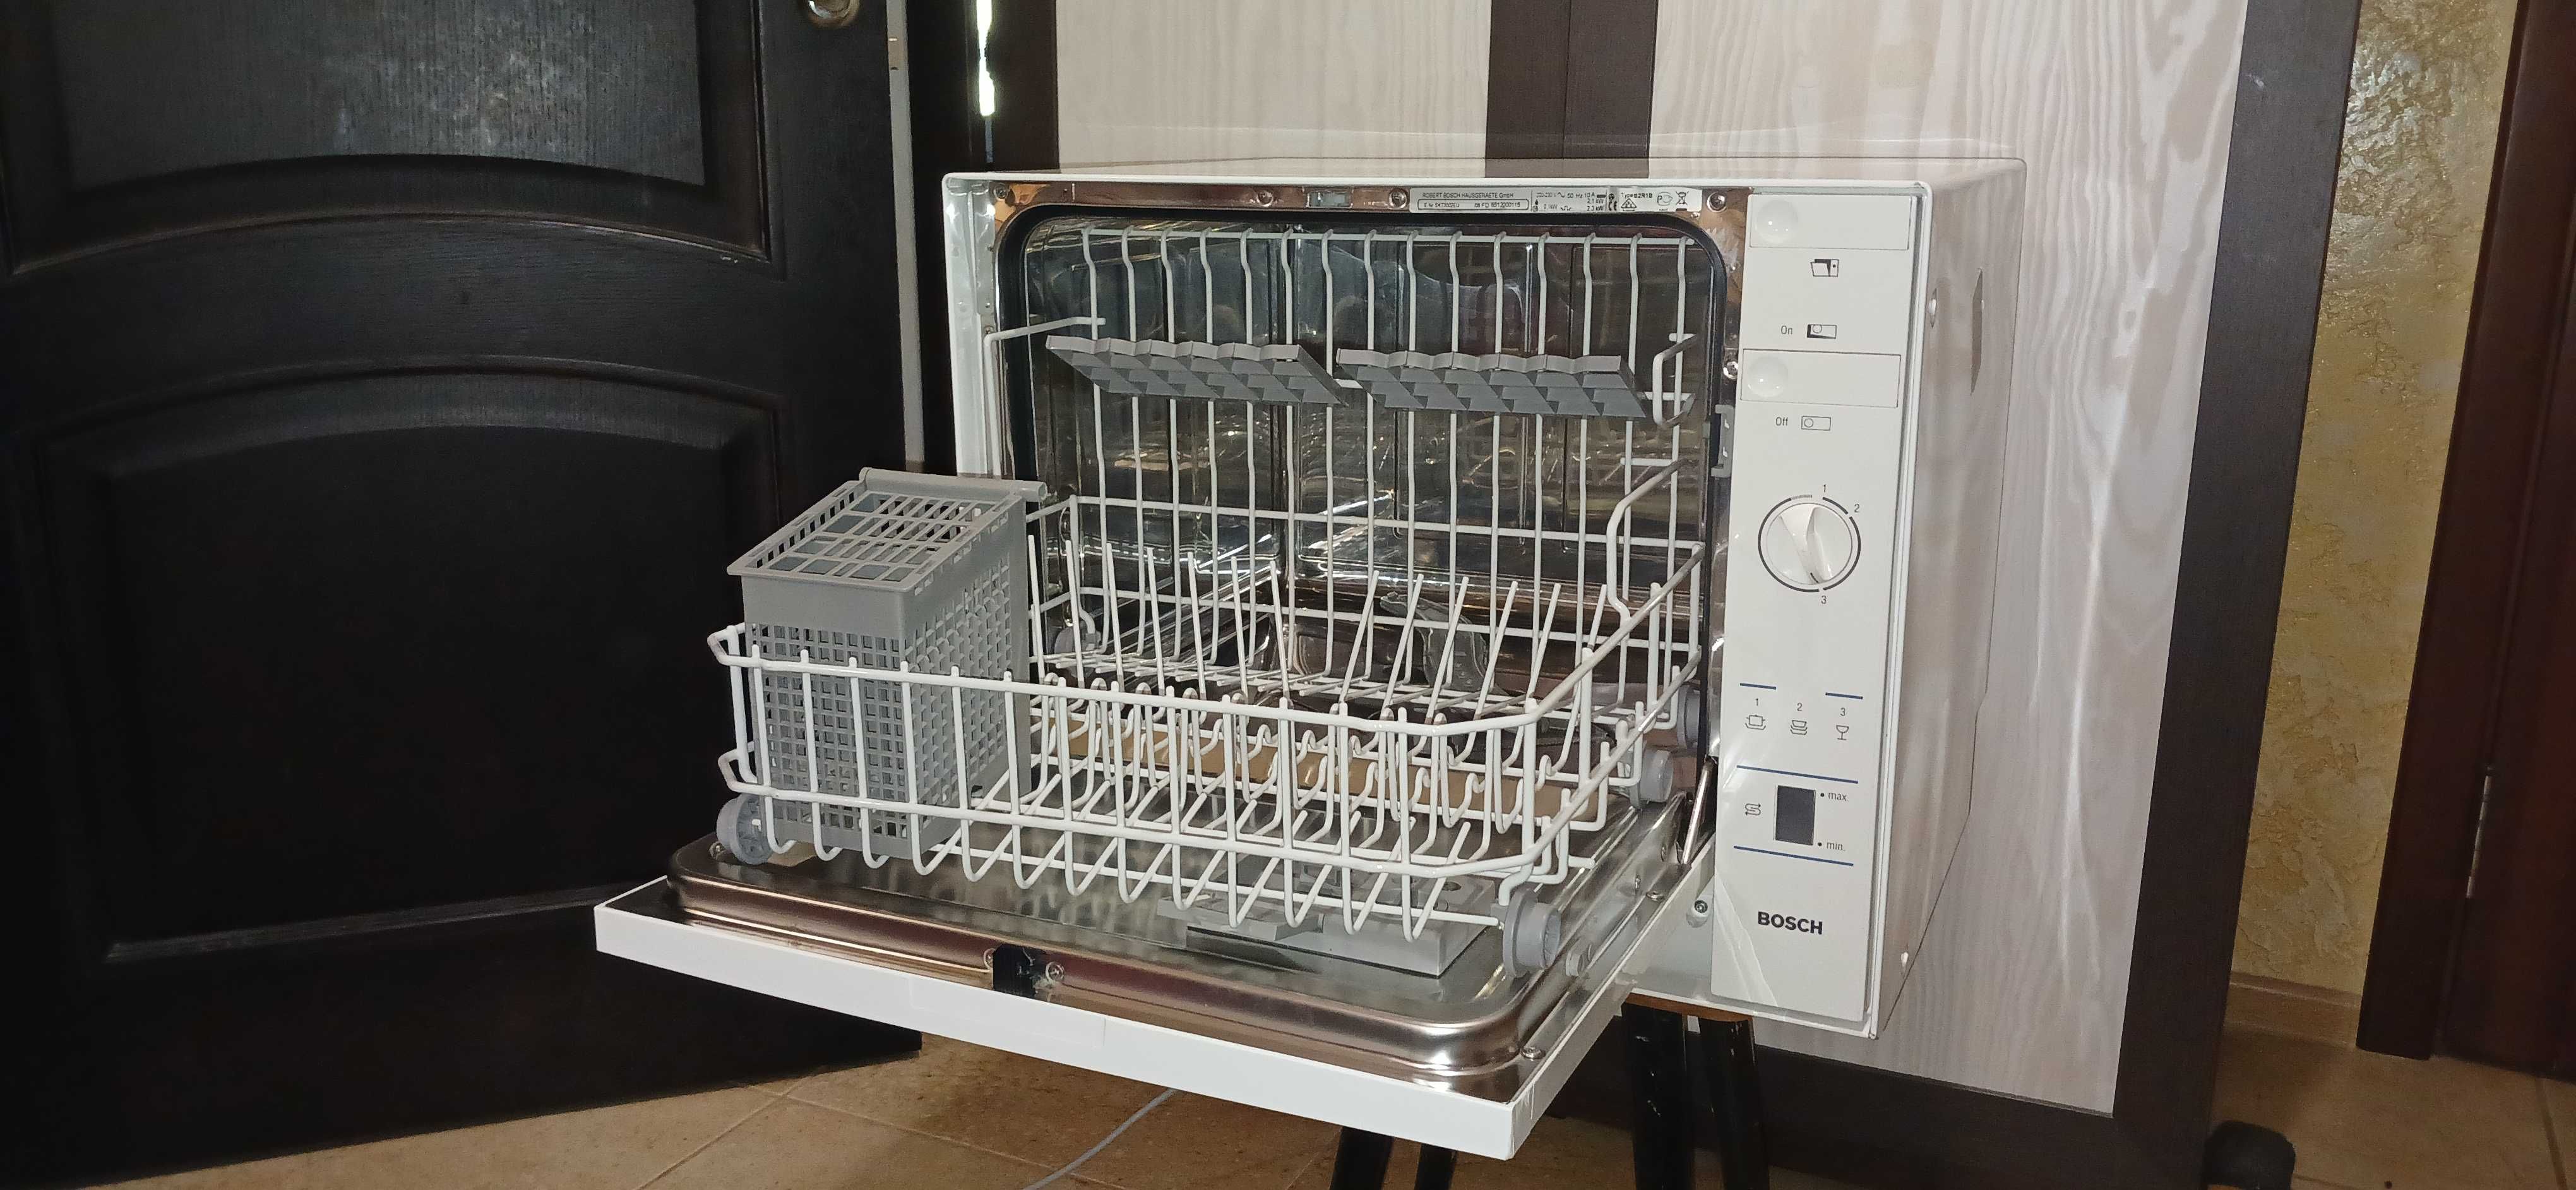 Продам Посудомоечная машина Bosch SKT 3002 EU